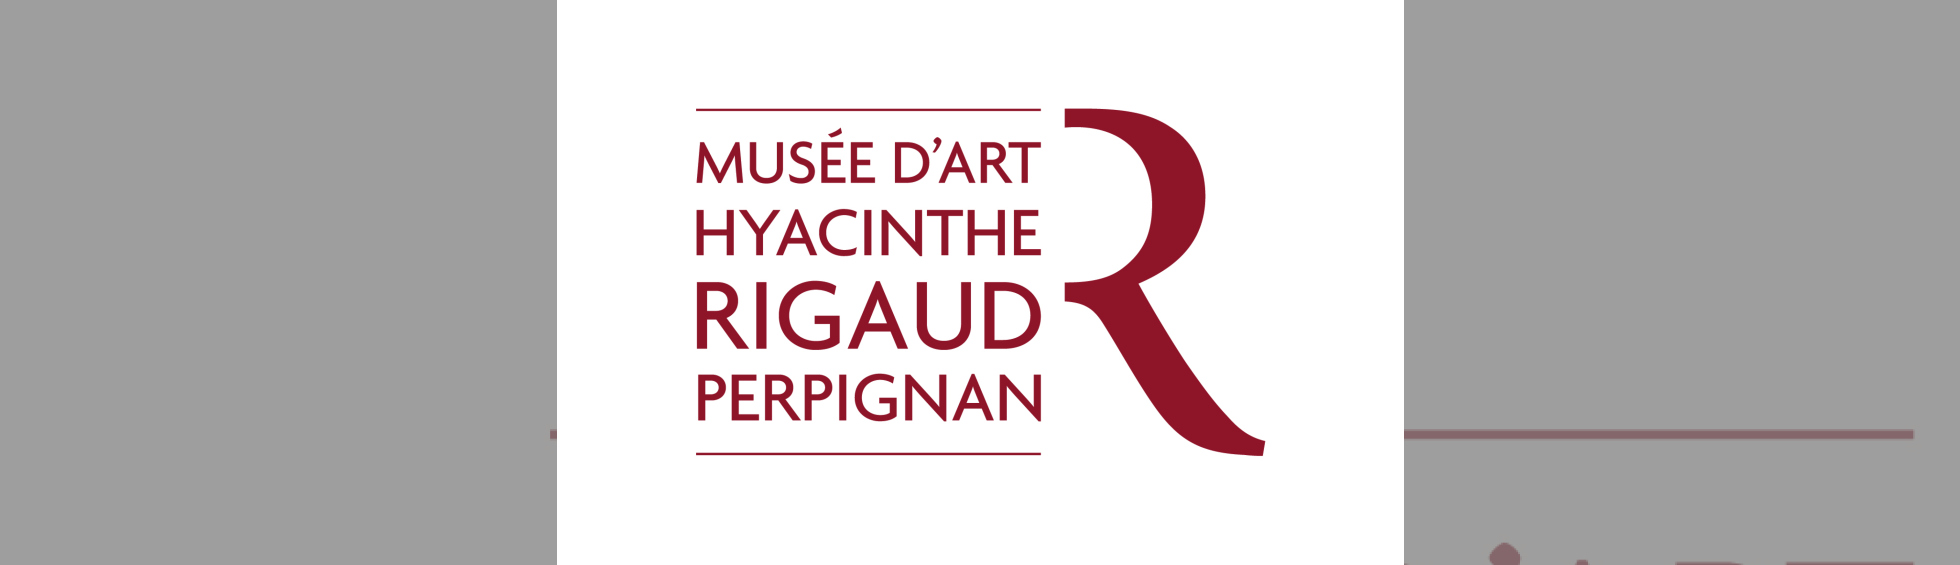 Musée d'art Hyacinthe Rigaud